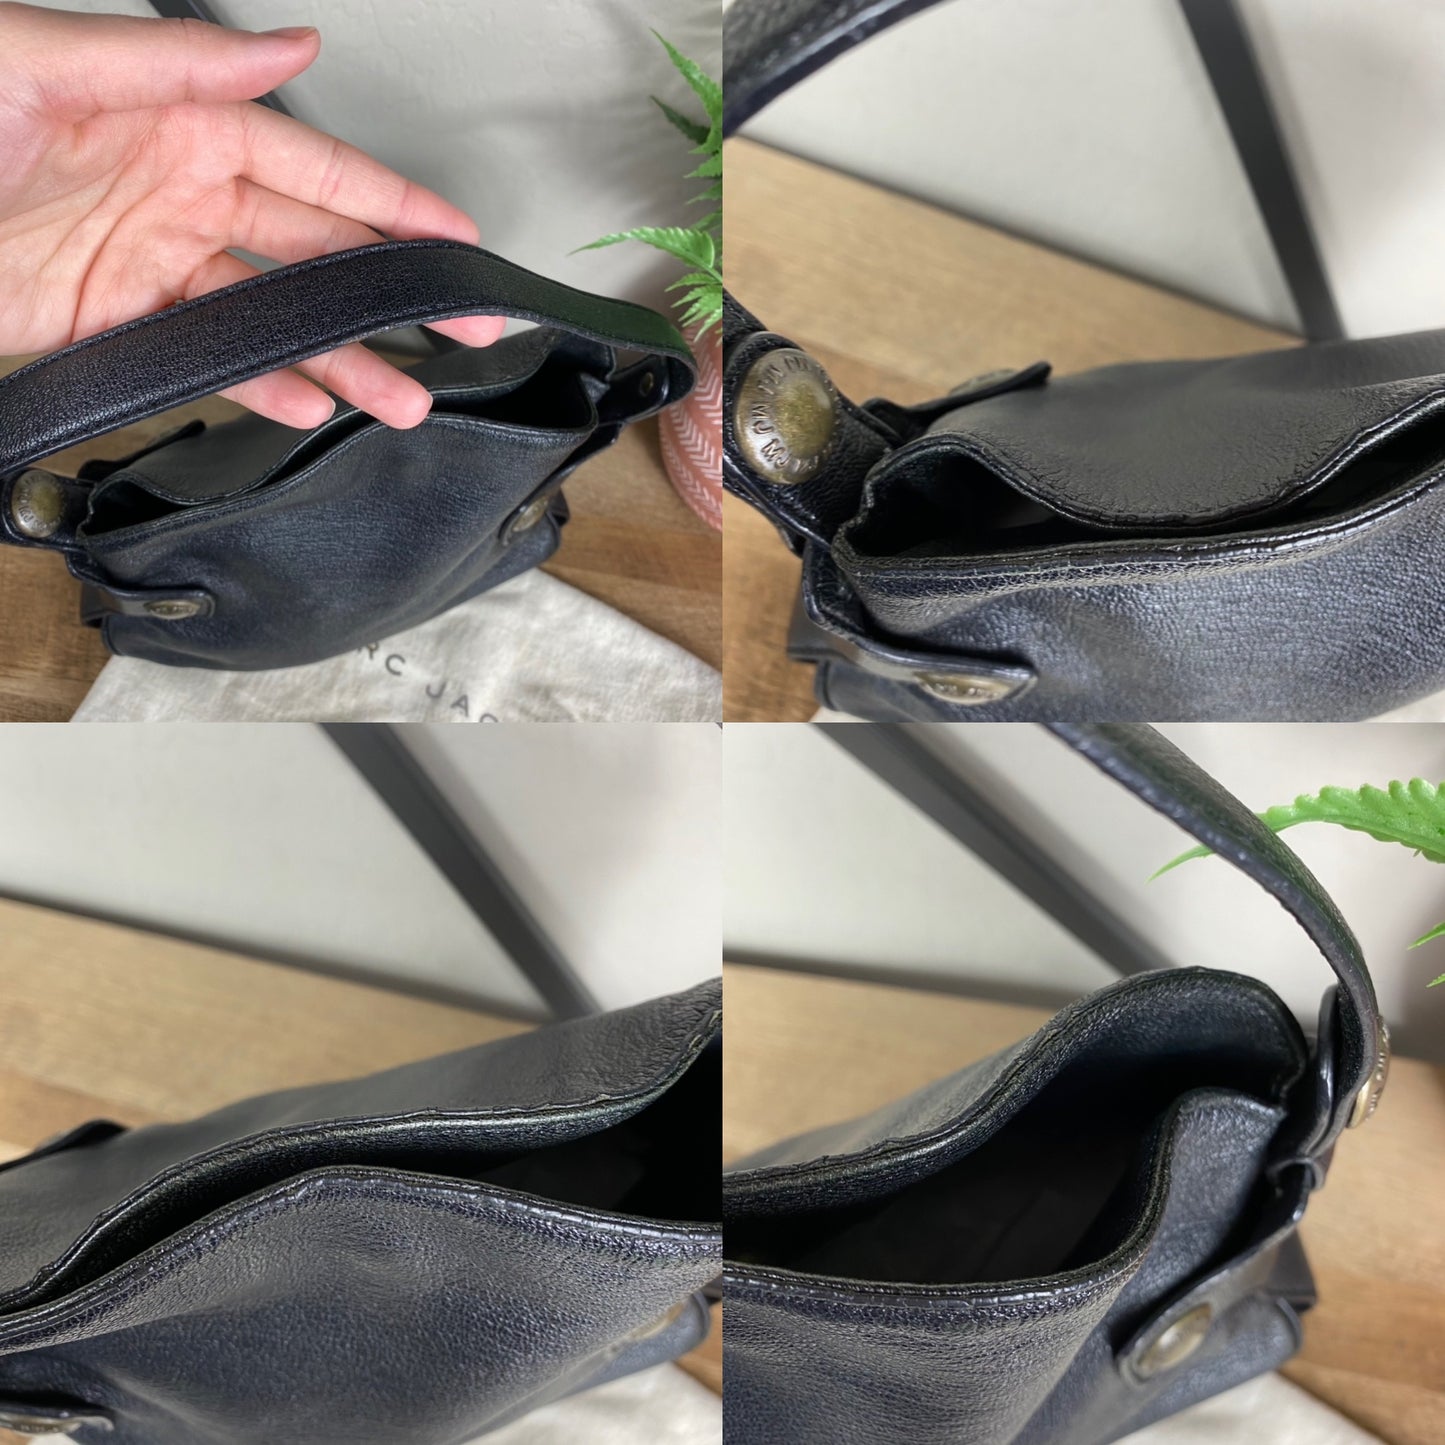 Marc Jacobs Small Leather Handbag